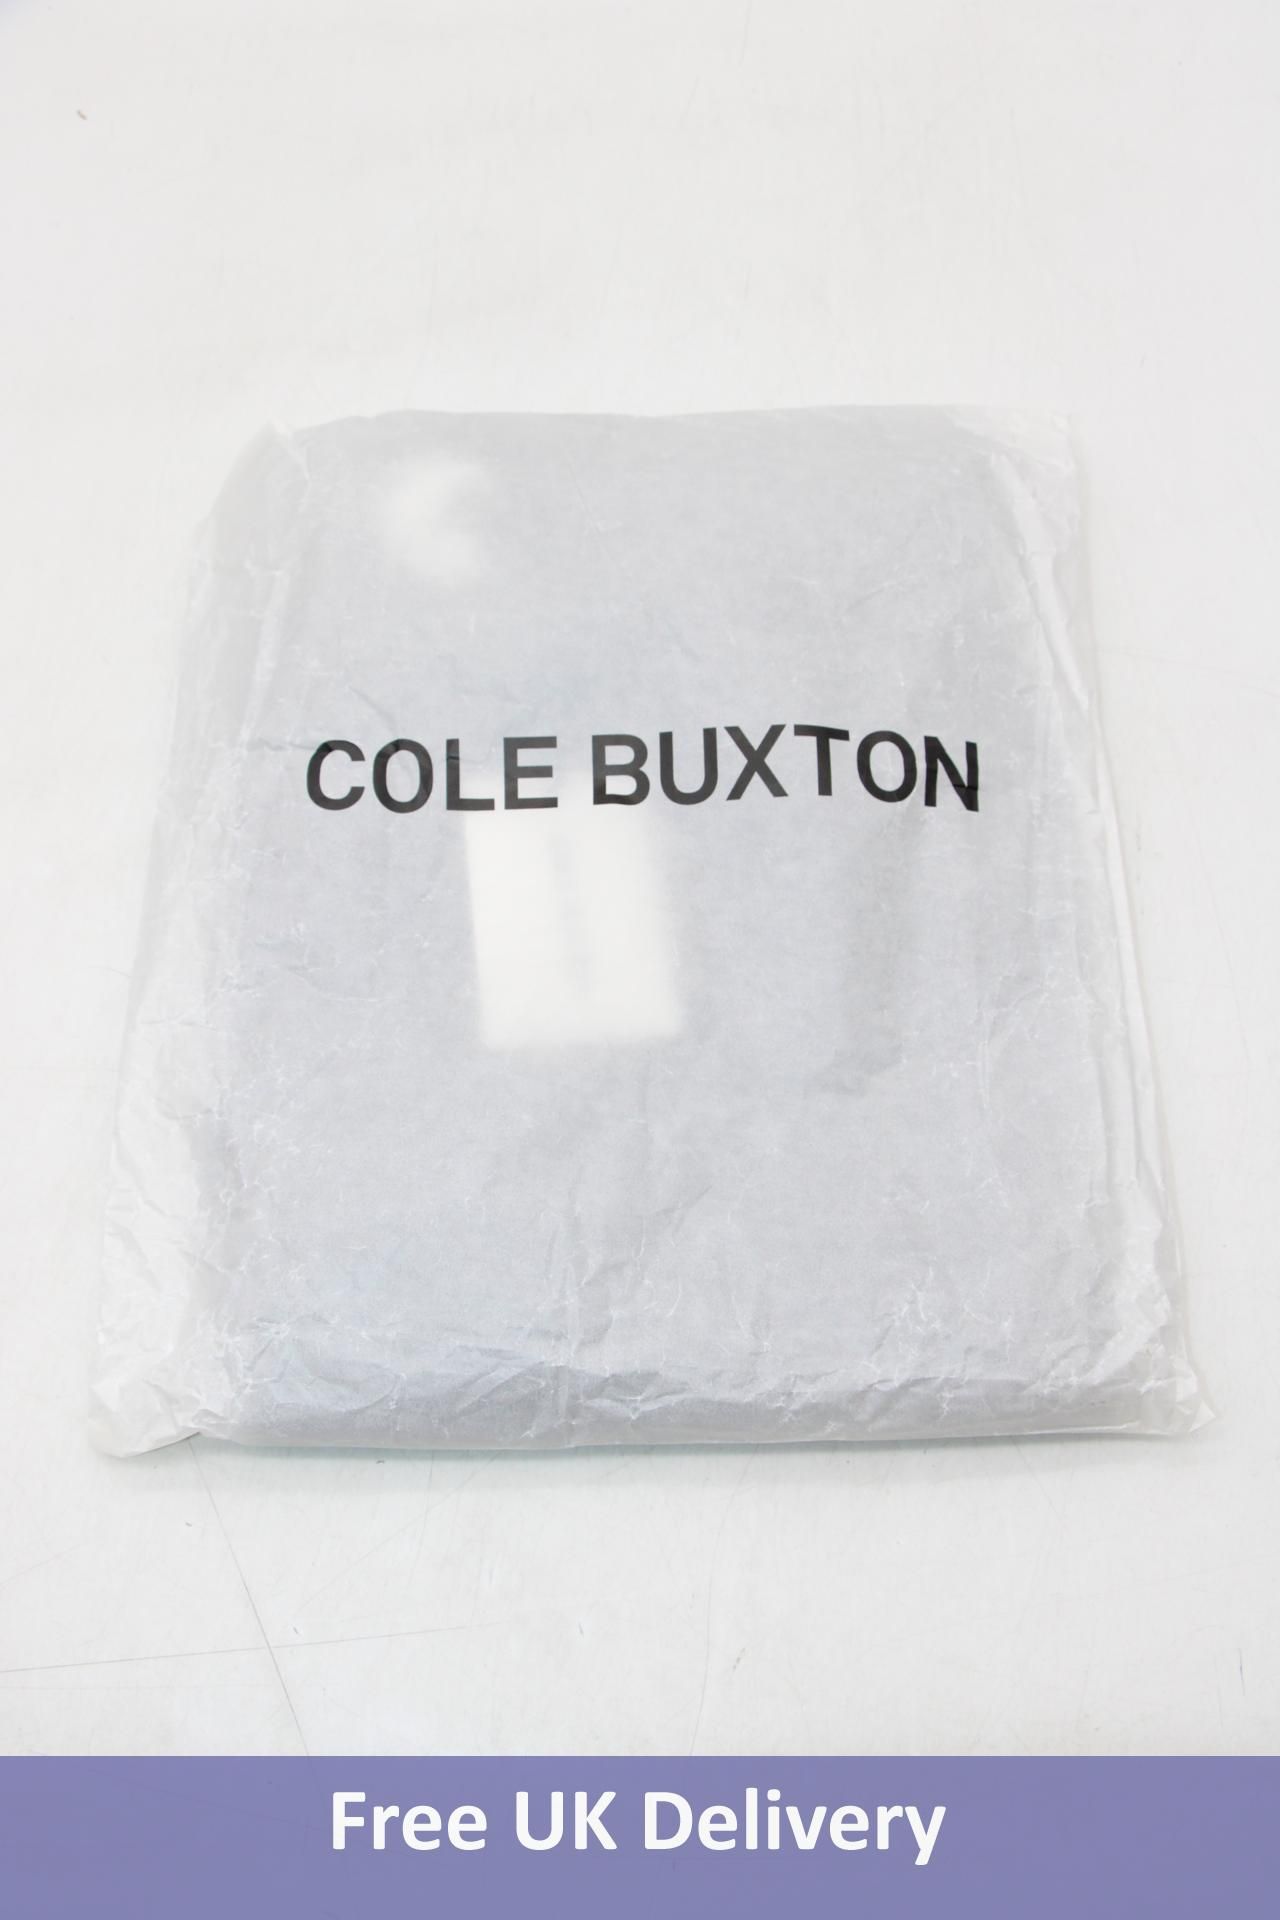 Cole Buxton Lounge Sweatpants, OG Washed Black, Size S